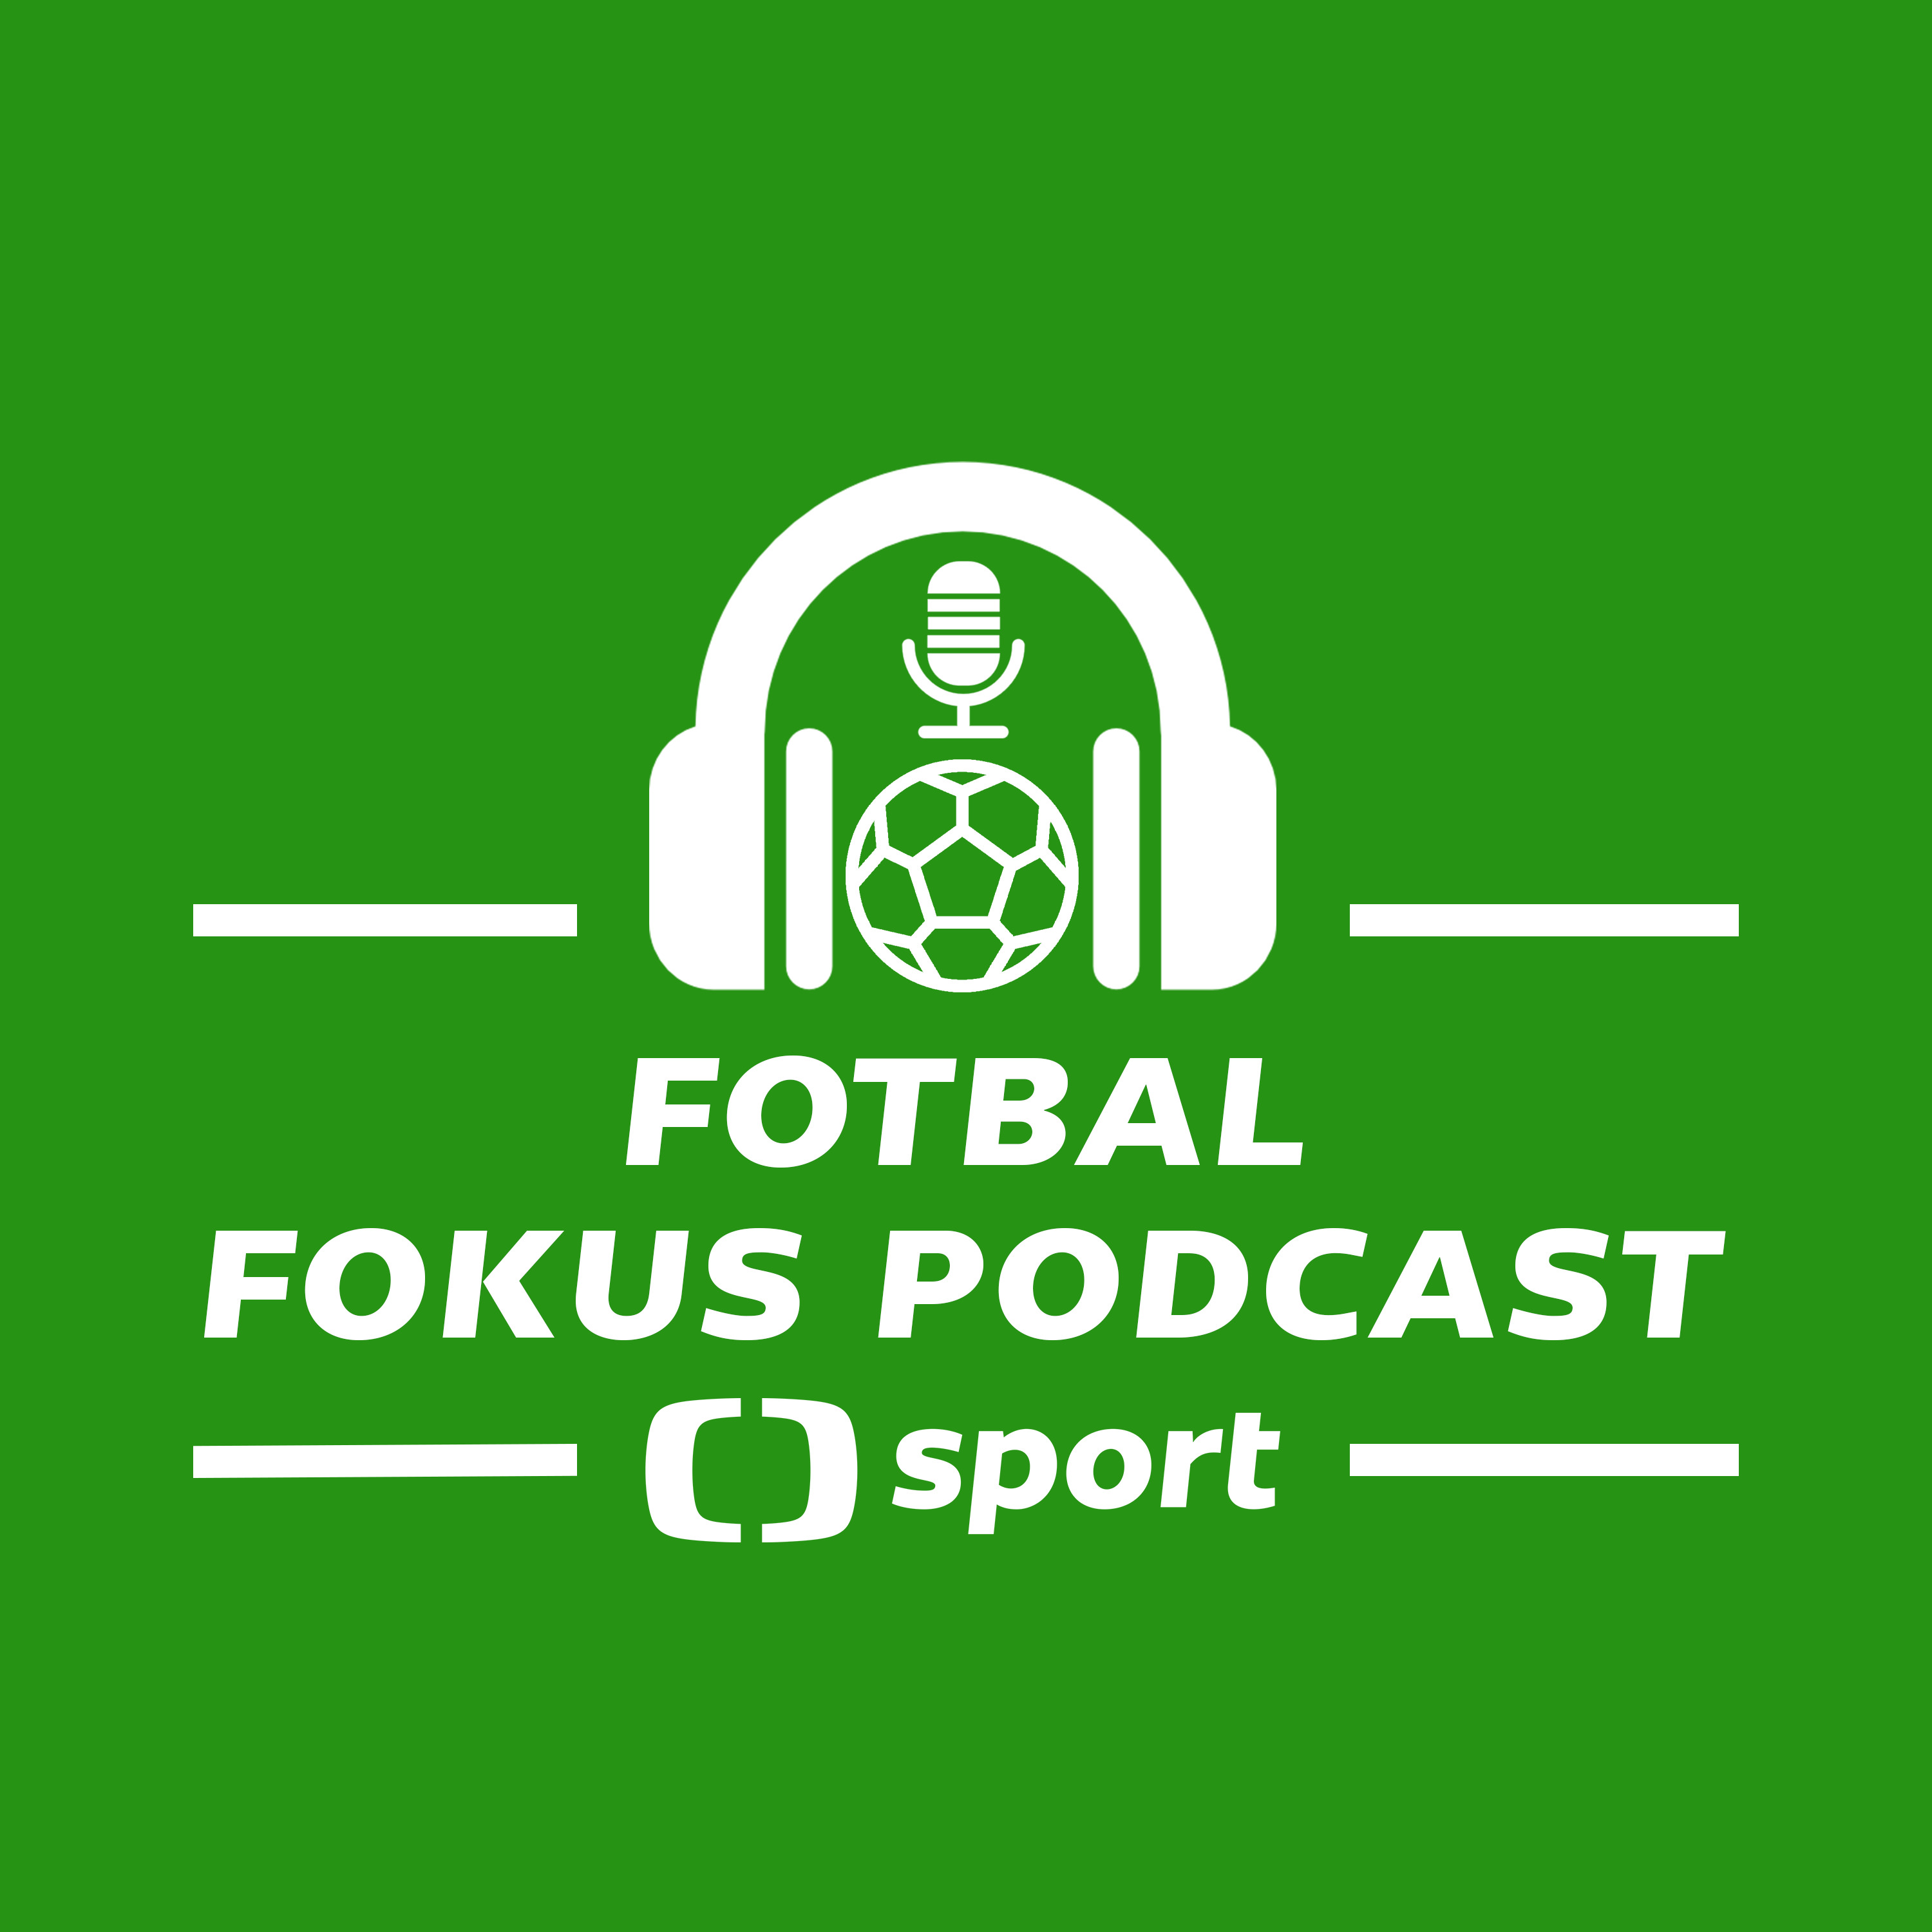 Fotbal fokus podcast: Má blíž do repre Koubek, nebo Svědík? Vlkanova na odchodu, týmy před poháry